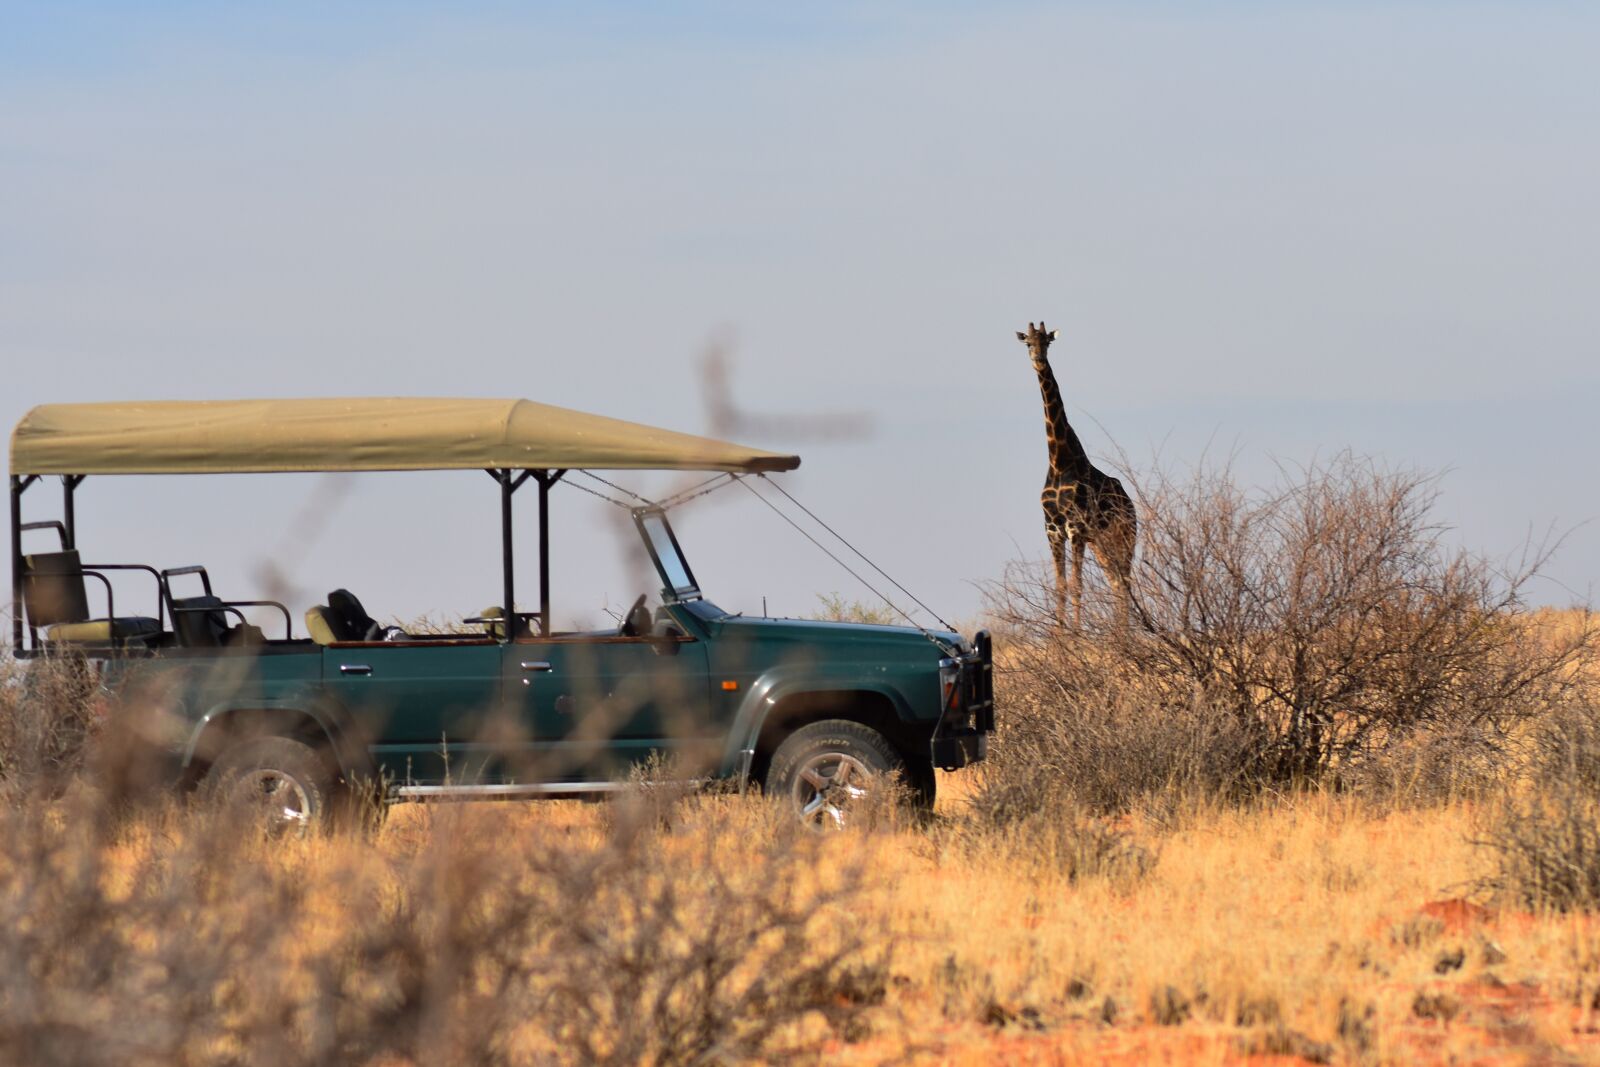 Nikon D3400 sample photo. Giraffe, safari, africa photography